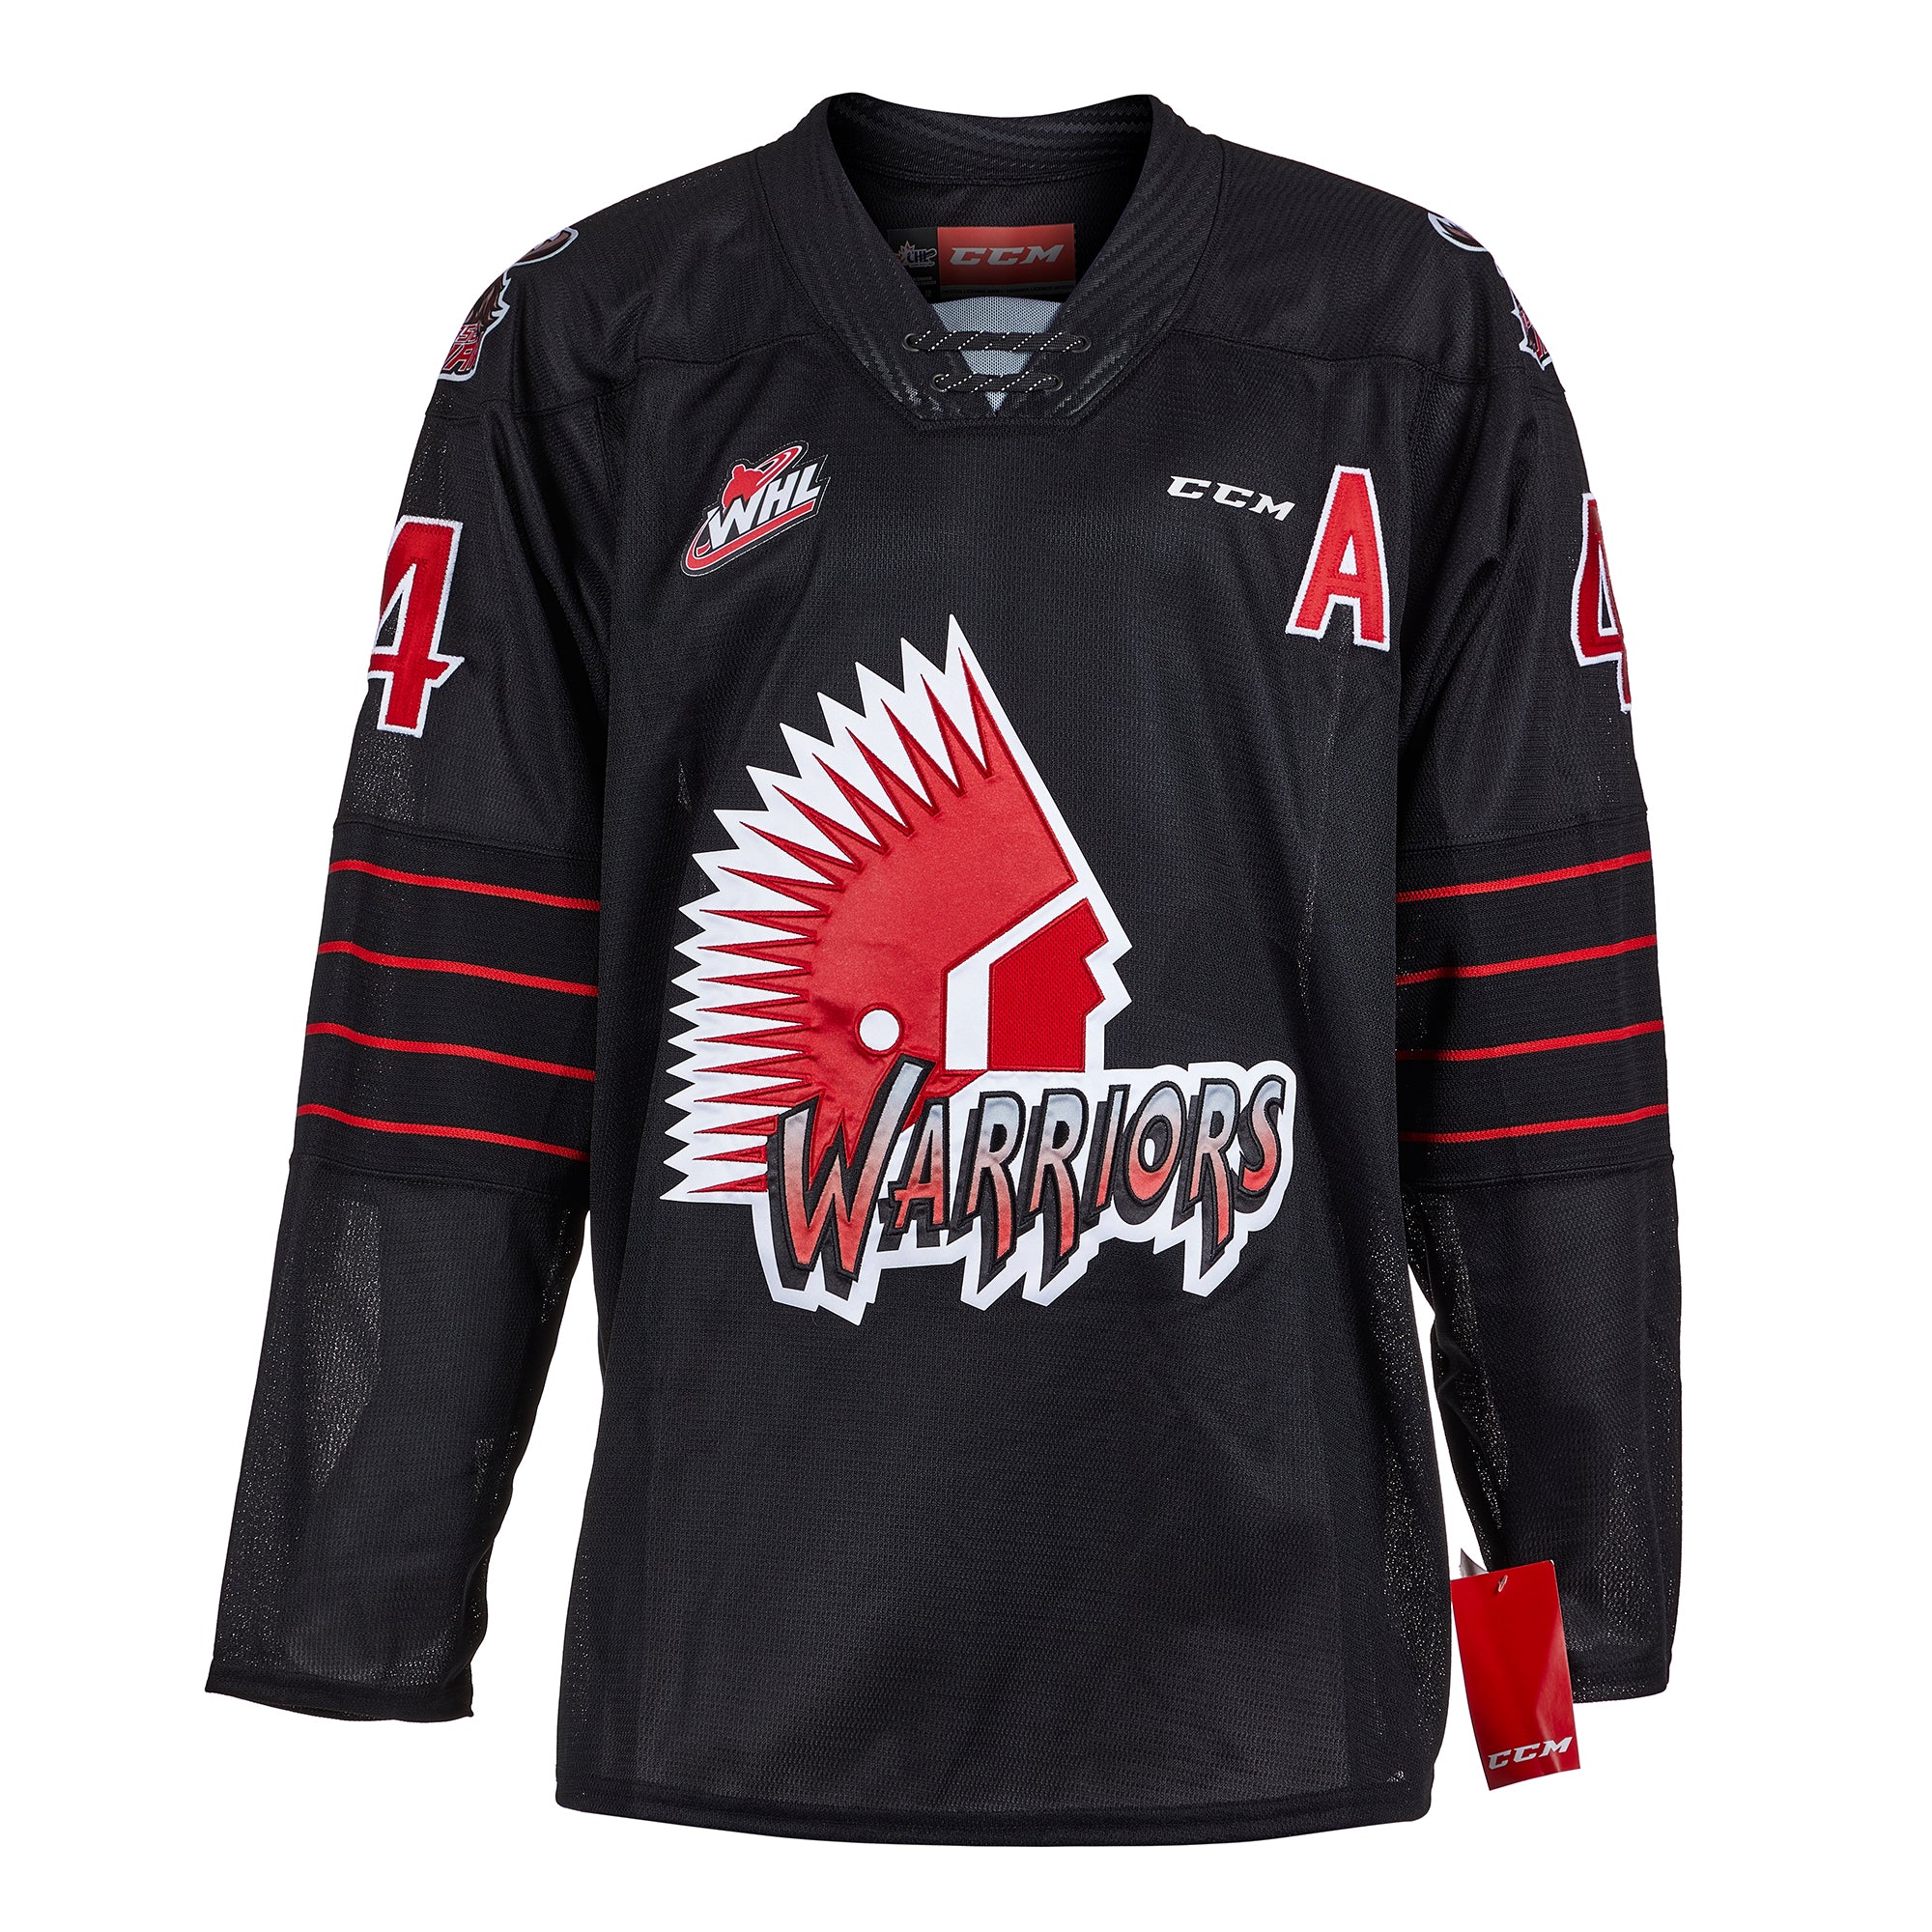 Moose Jaw Warriors fan designed GW jersey : r/hockeyjerseys